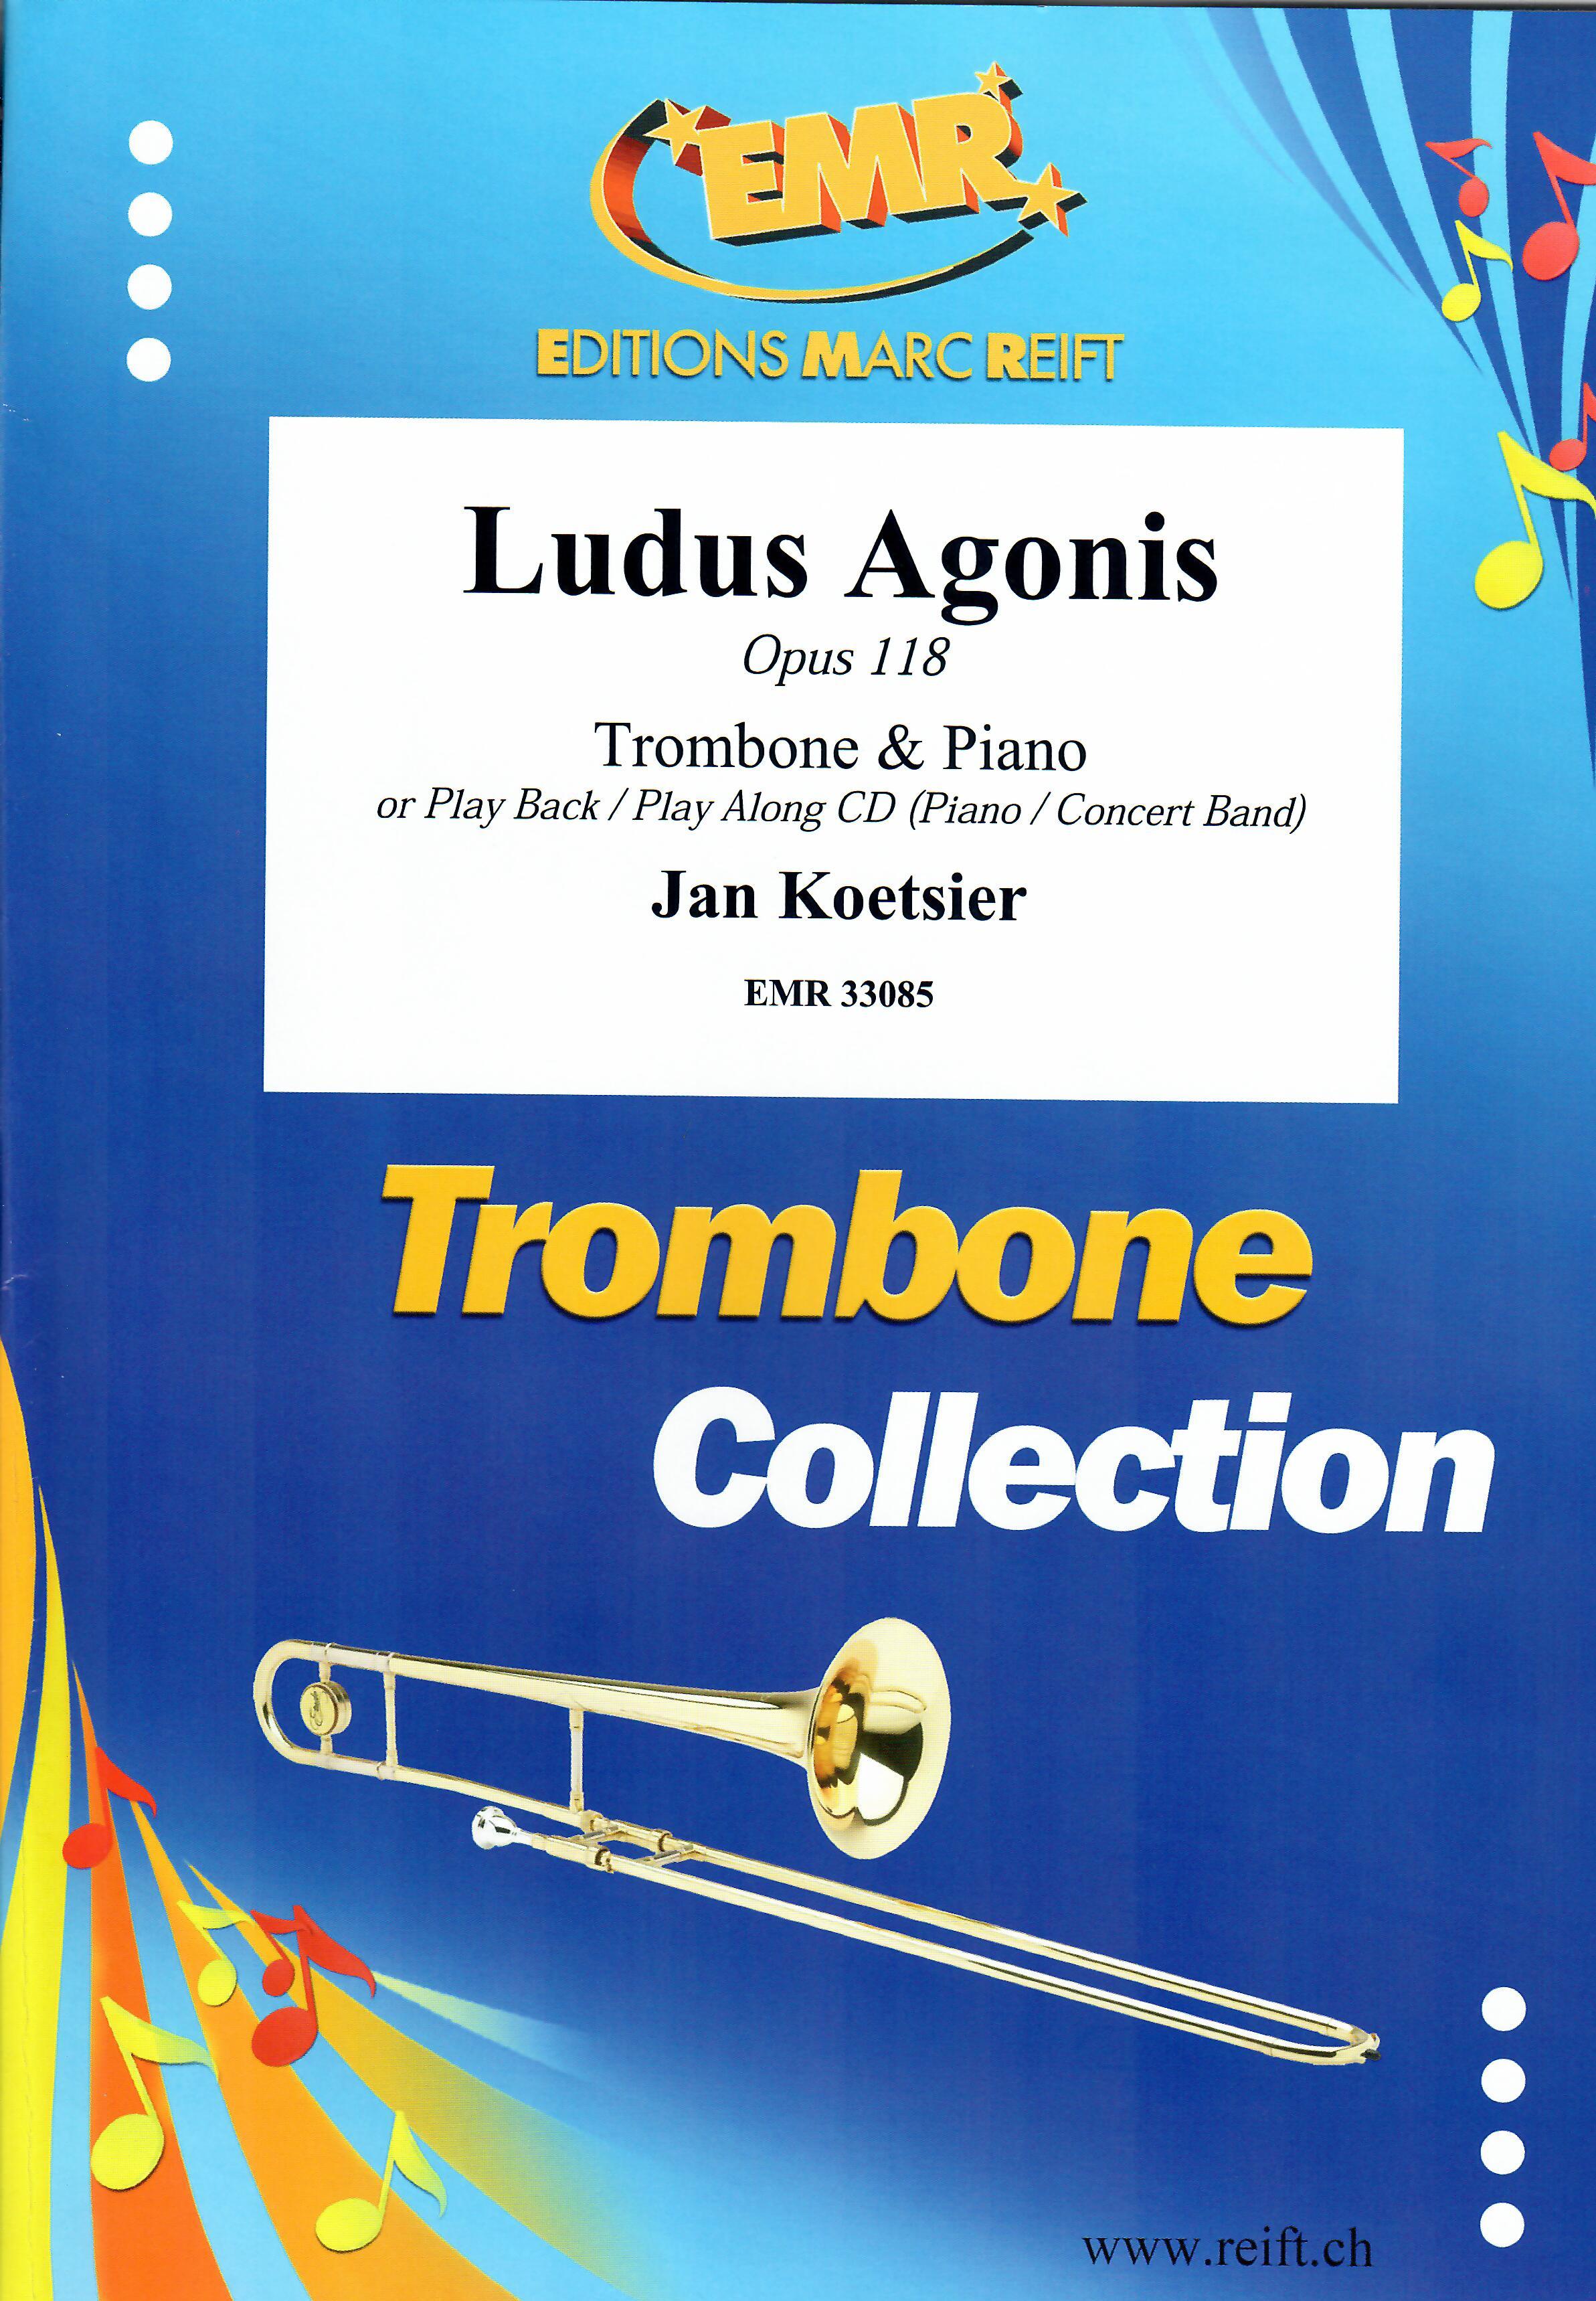 LUDUS AGONIS, SOLOS - Trombone